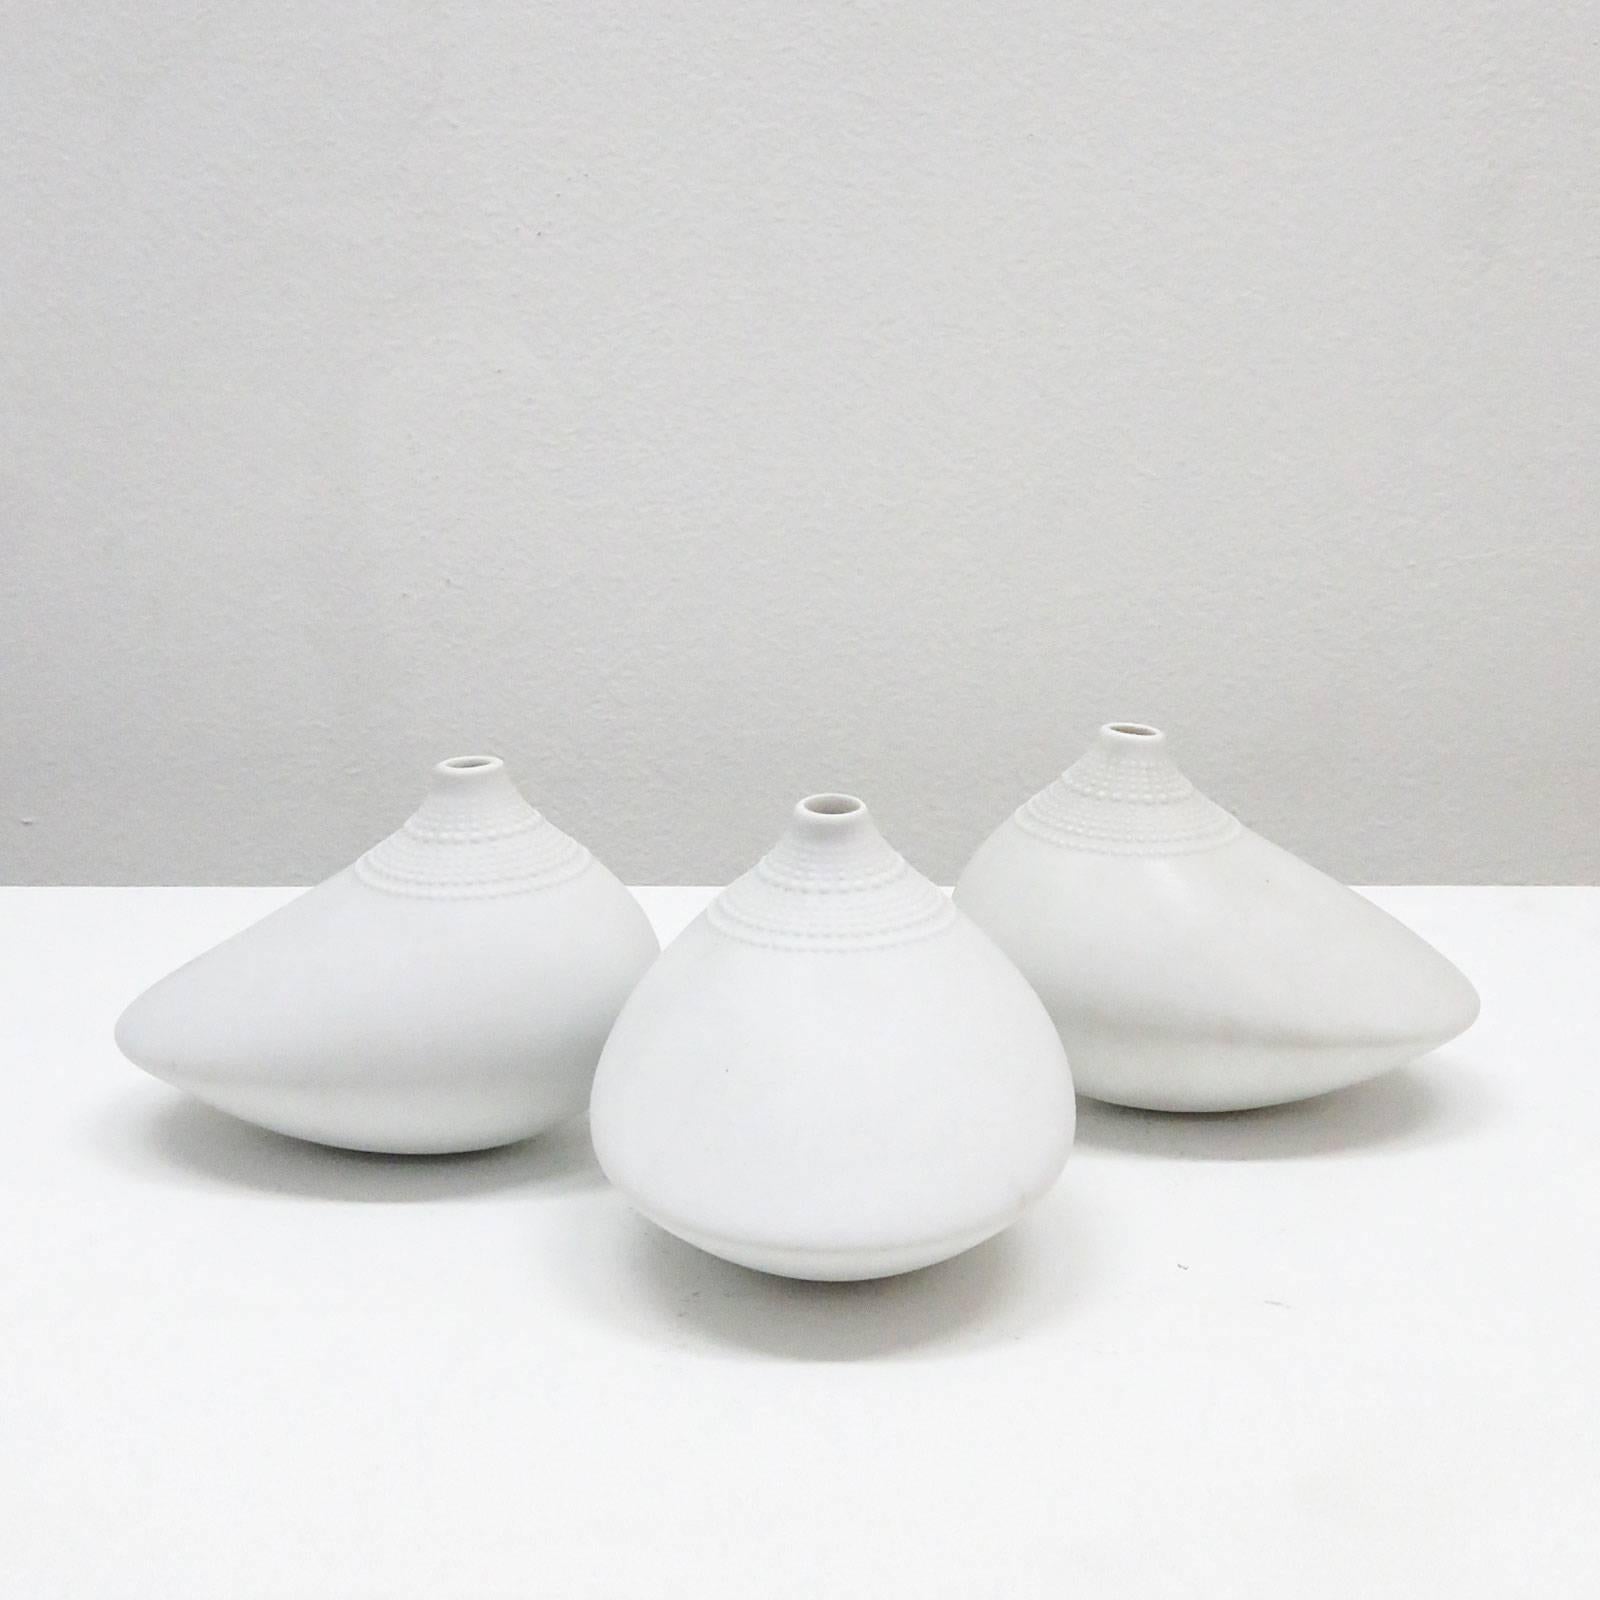 Tapio Wirkkala 'Pollo' Vases for Rosenthal Studio Line, 1970 (Porzellan)